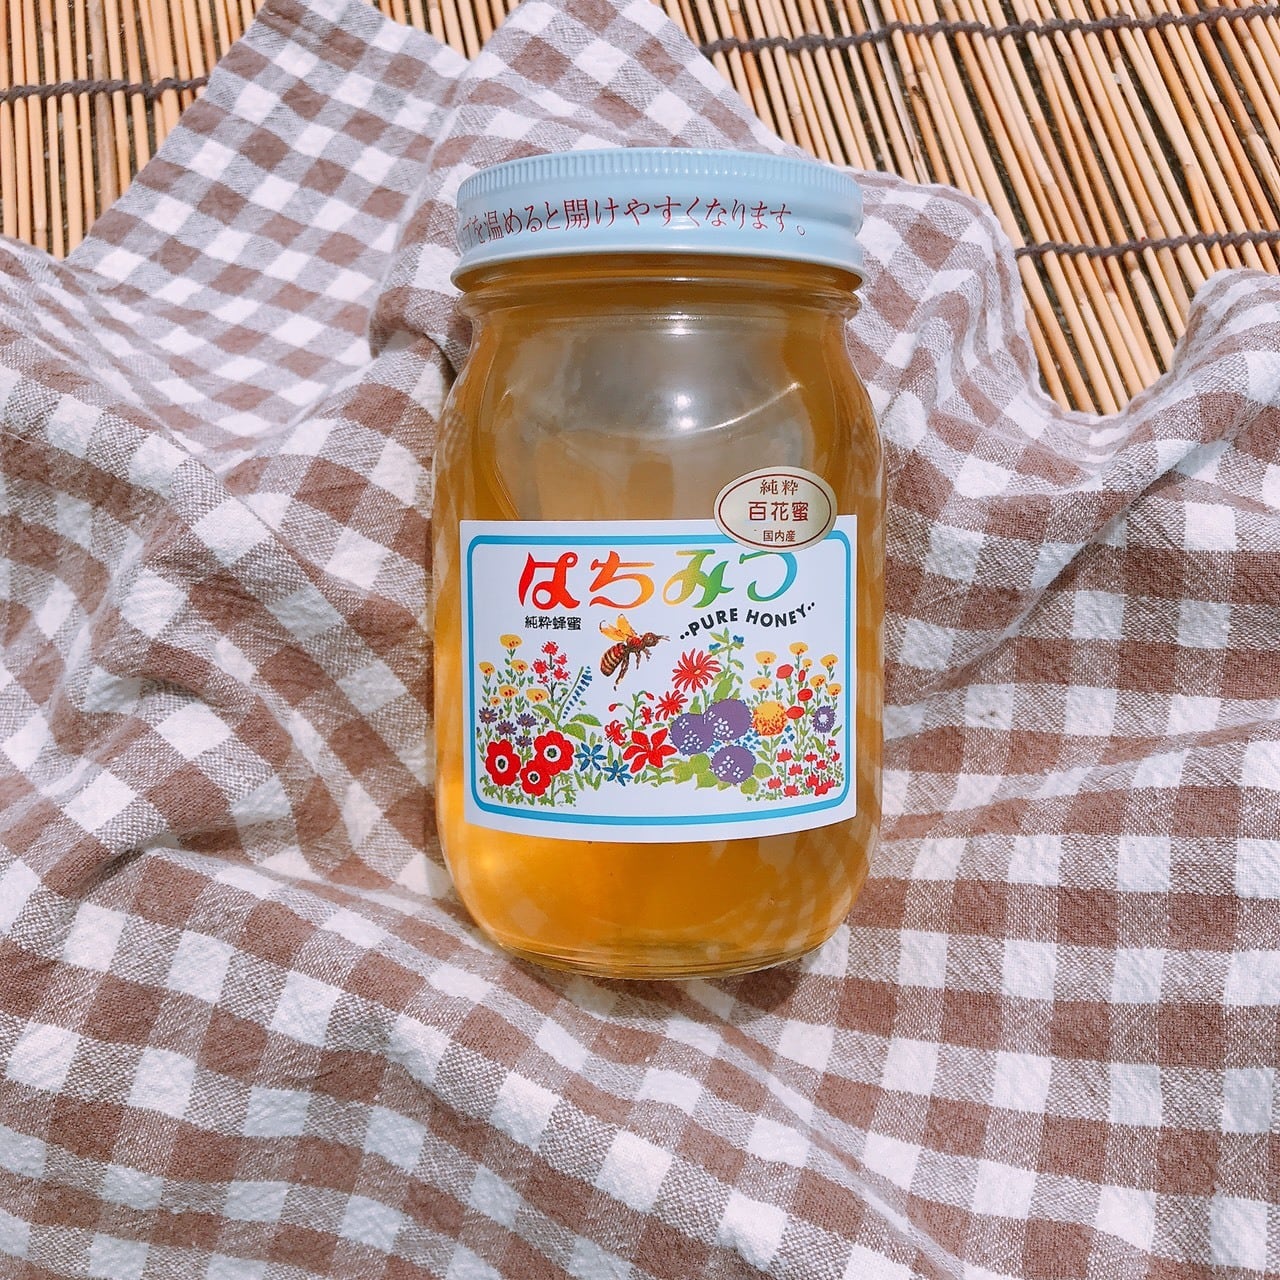 最高級の品質 国産蜂蜜B品計4800g - 食品